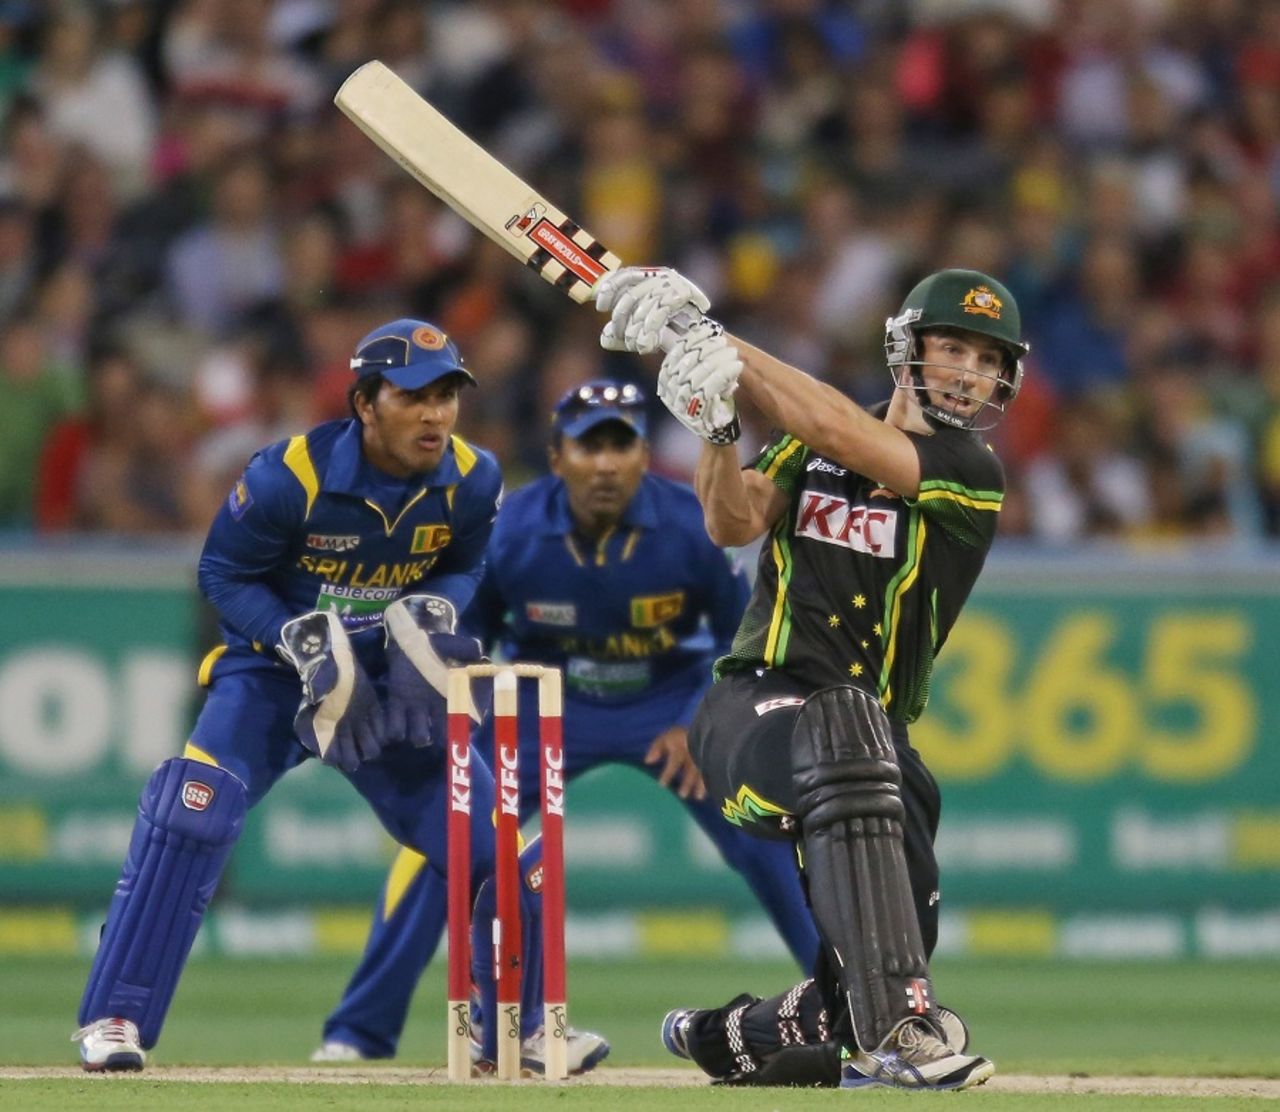 Shaun Marsh stabilised the Australian innings after their openers were dismissed, Australia v Sri Lanka, 2nd T20, Melbourne, January 28, 2013